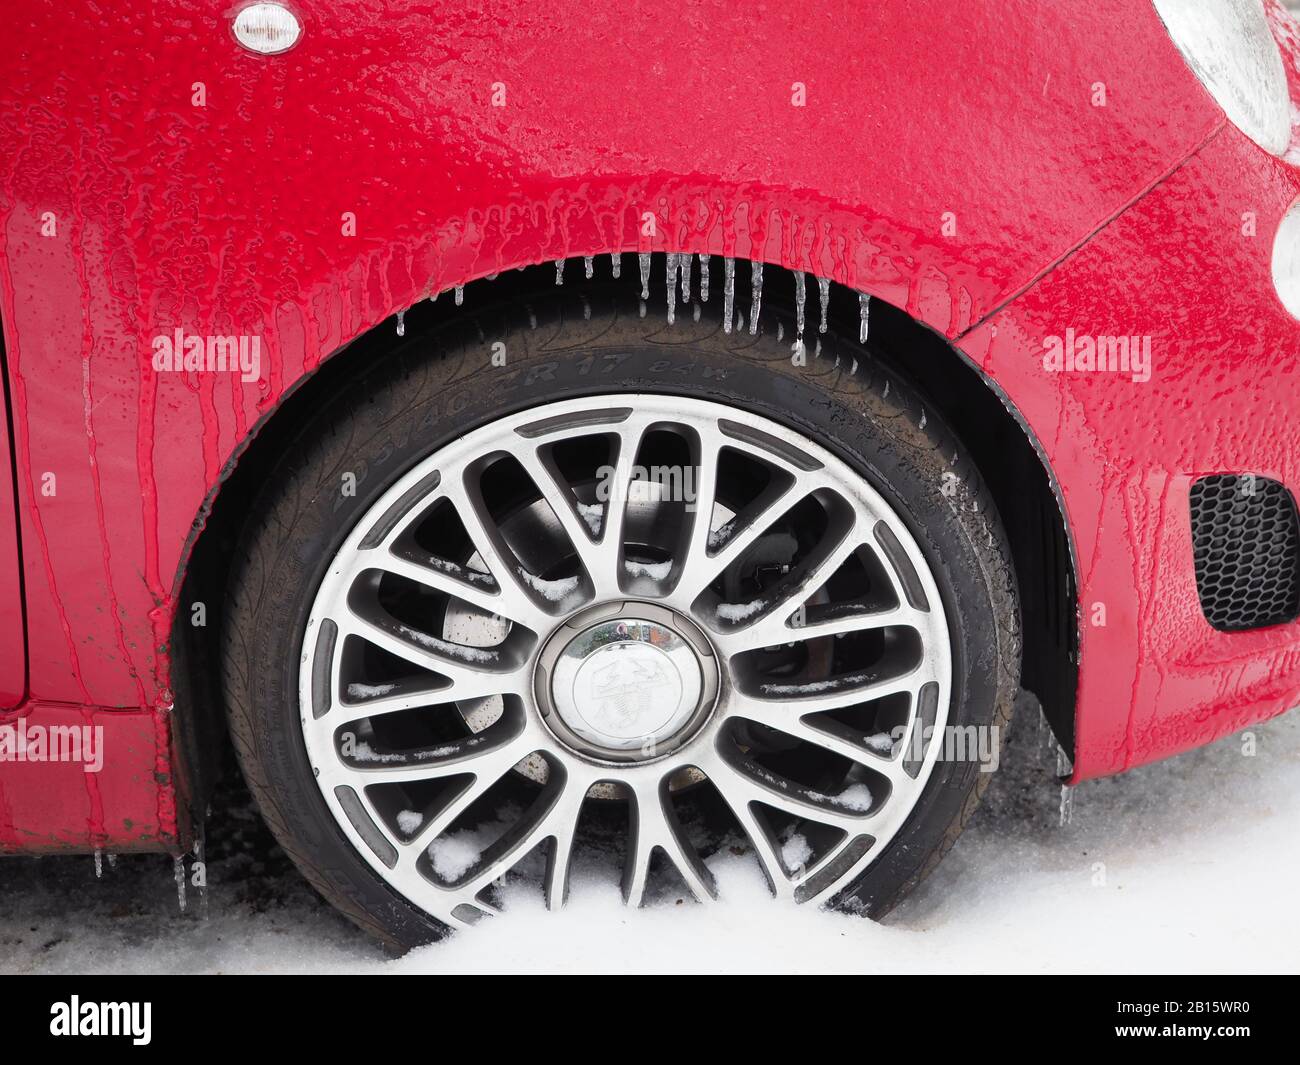 icelles accrochées au passage de roue d'une voiture rouge Banque D'Images